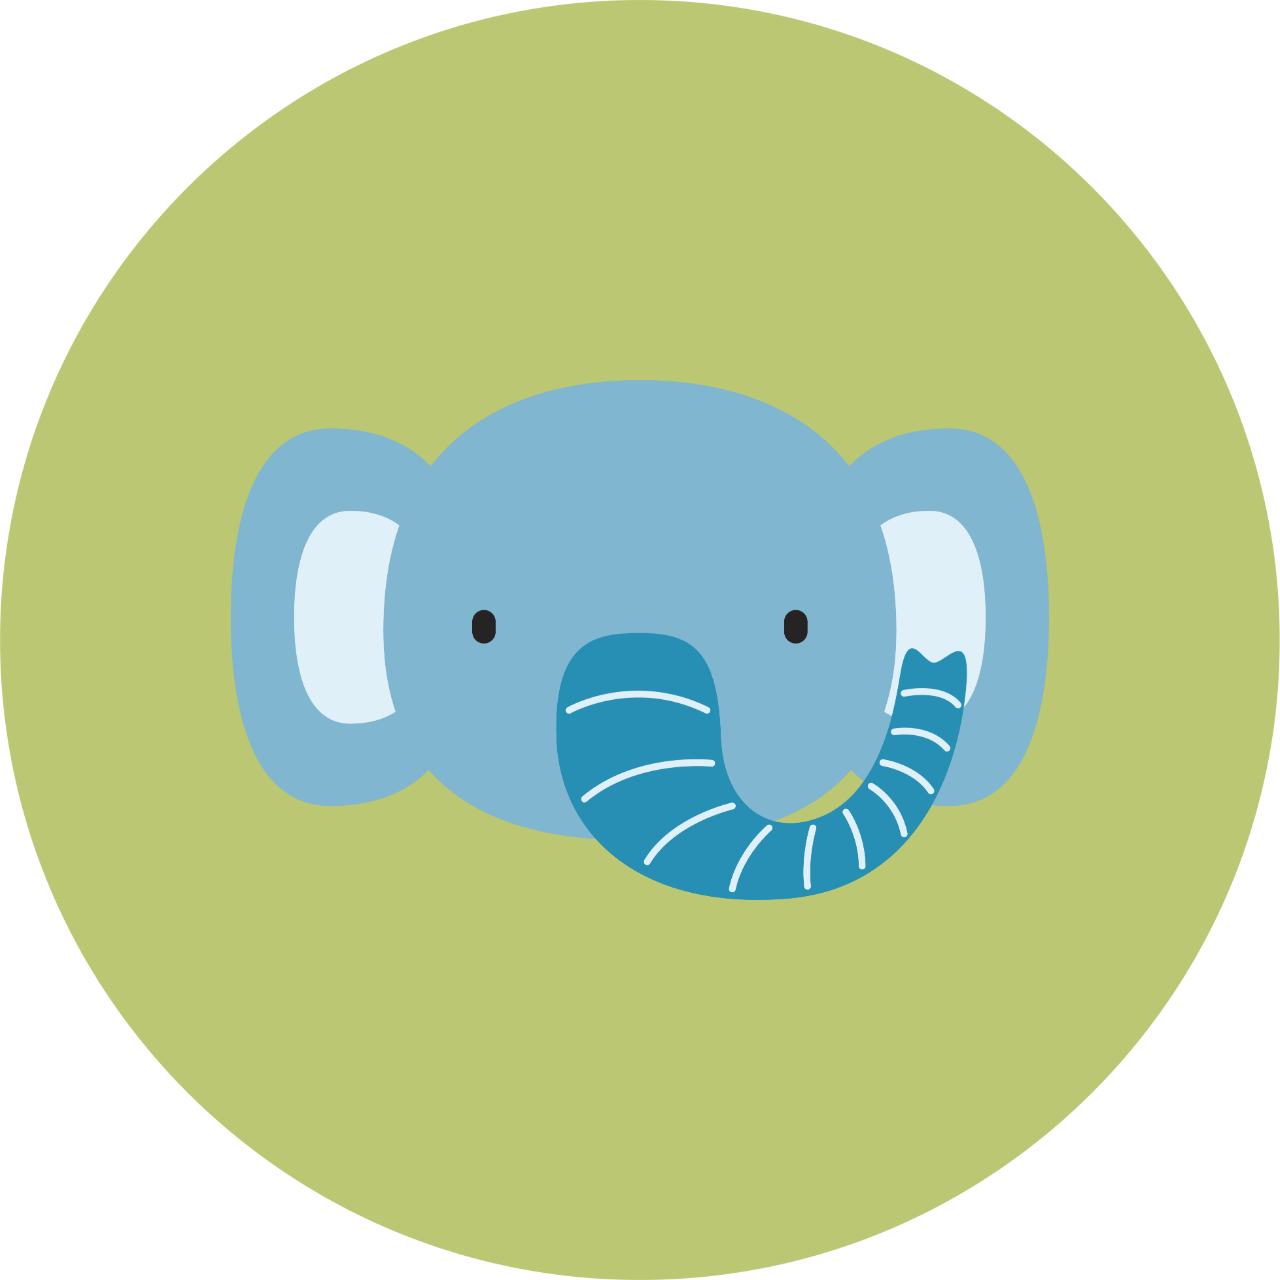 Açık yeşil bir daire içinde koyu mavi uzun bir burnu olan açık mavi renkli bir fil başı